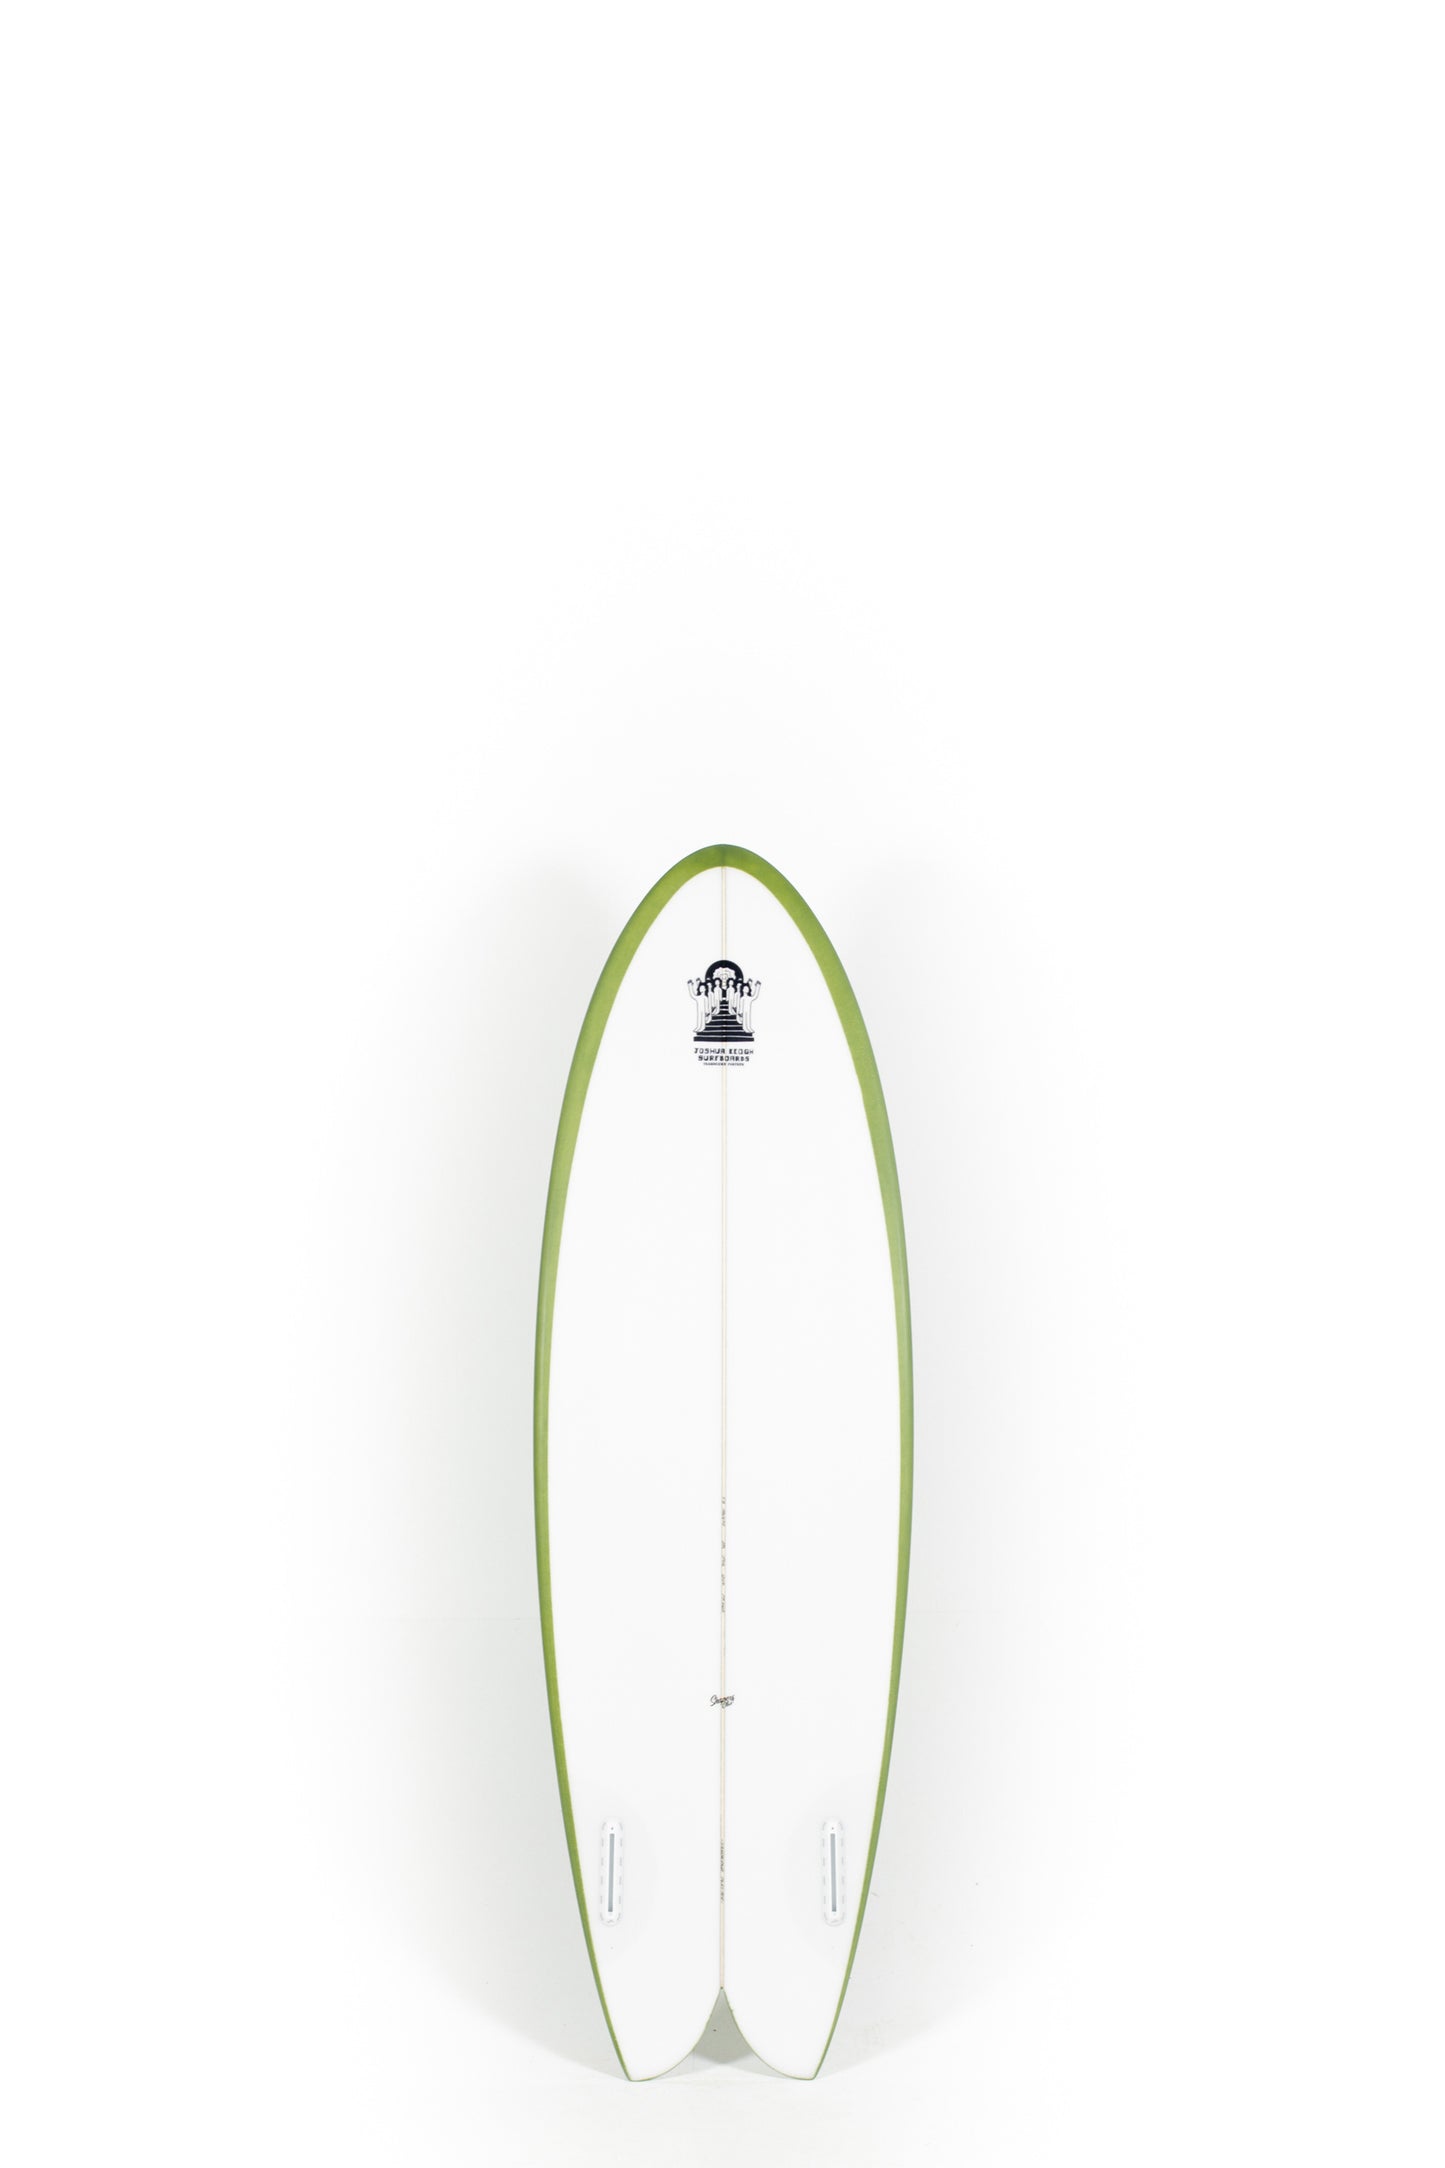 
                  
                    Pukas Surf Shop_Joshua Keogh Surfboard - MONAD by Joshua Keogh - 5'6" x 20 1/2 x 2 3/8 - MONAD56
                  
                